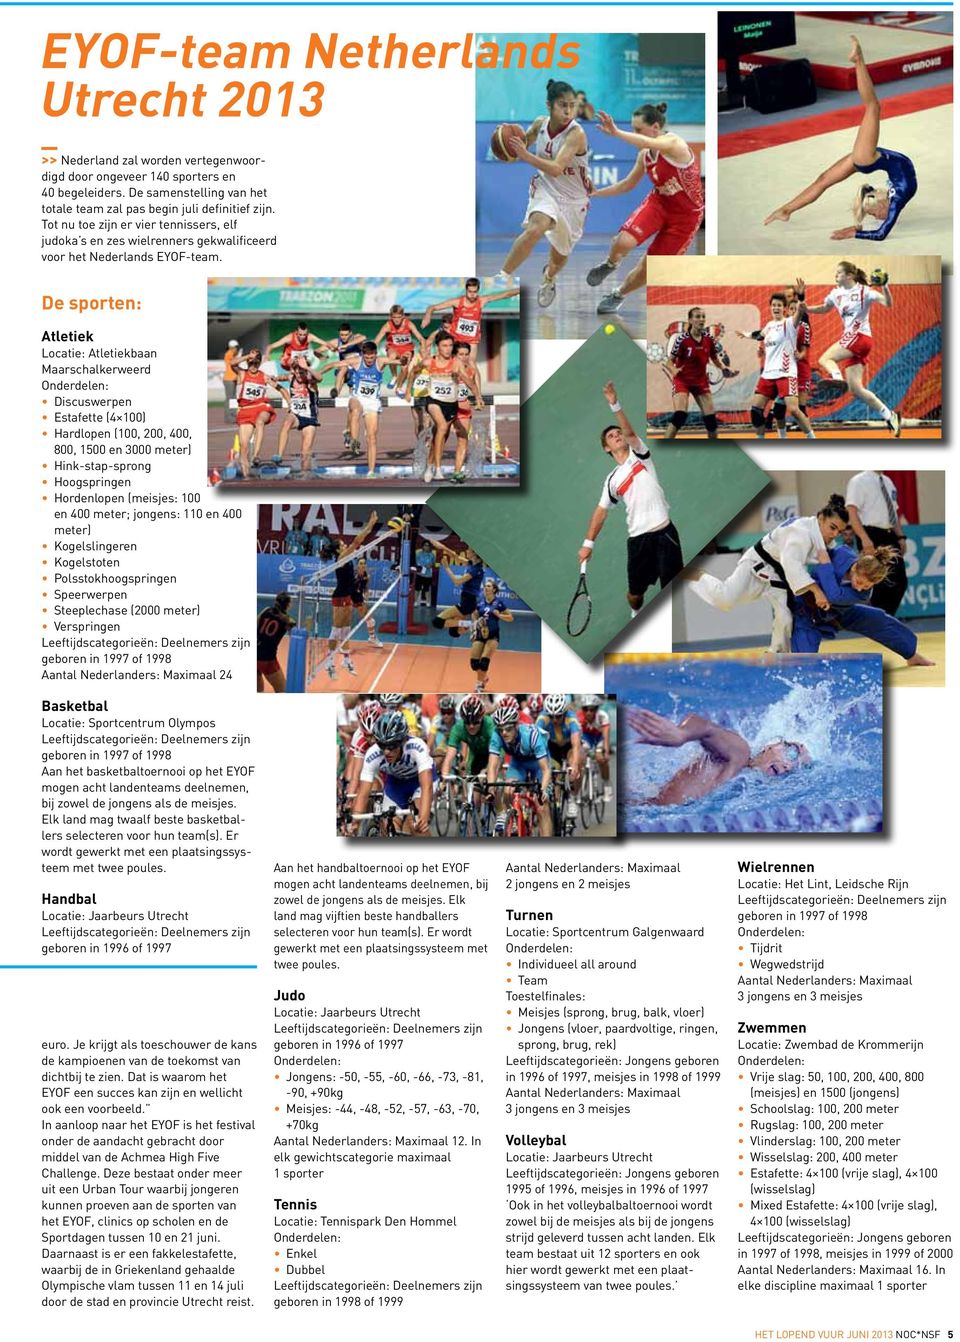 De sporten: Atletiek Locatie: Atletiekbaan Maarschalkerweerd Discuswerpen Estafette (4 100) Hardlopen (100, 200, 400, 800, 1500 en 3000 meter) Hink-stap-sprong Hoogspringen Hordenlopen (meisjes: 100